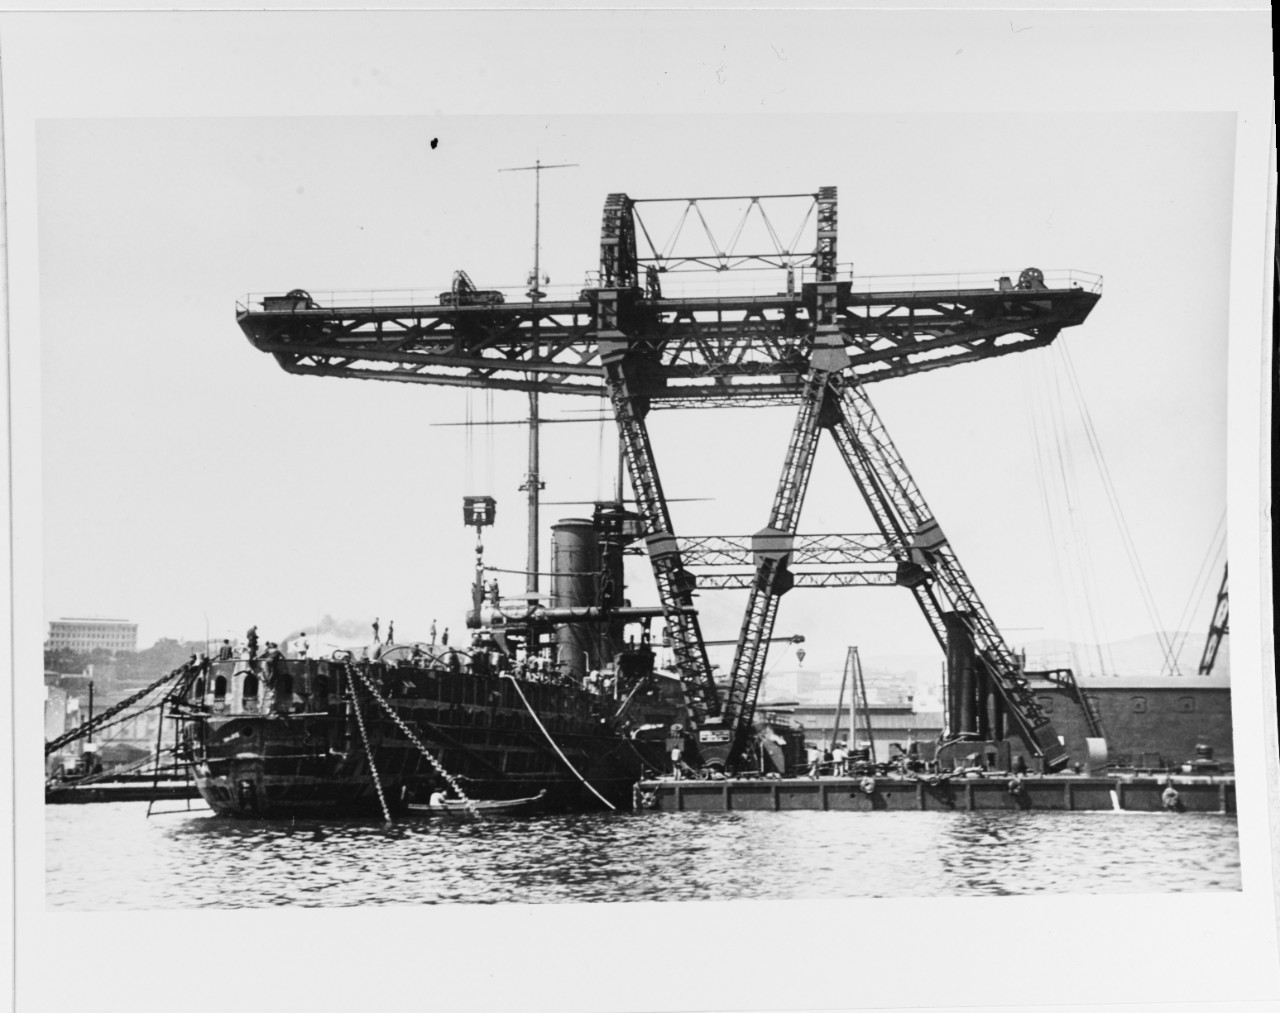 ZRINYI Austrian Battleship, 1910-20